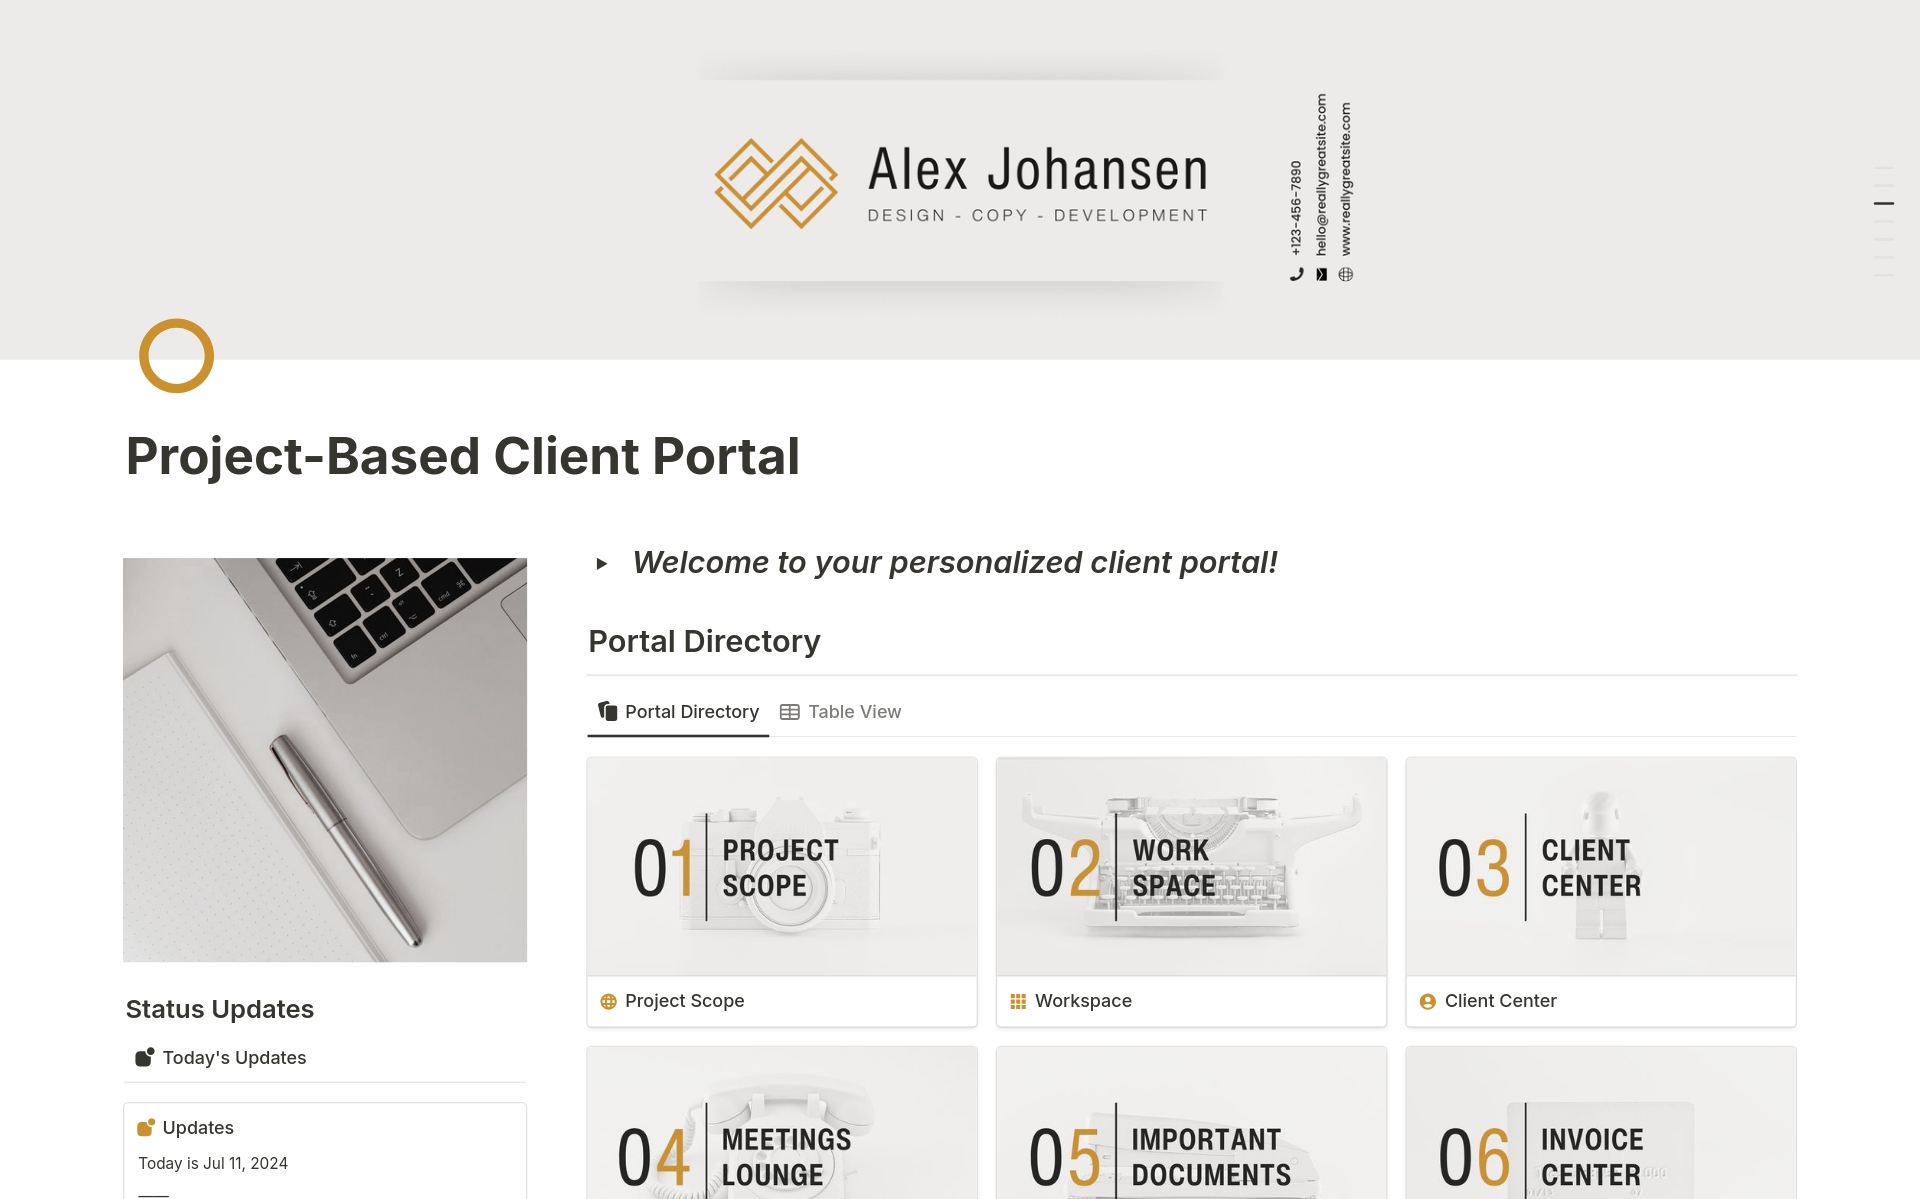 Uma prévia do modelo para Service & Project-Based Client Portal